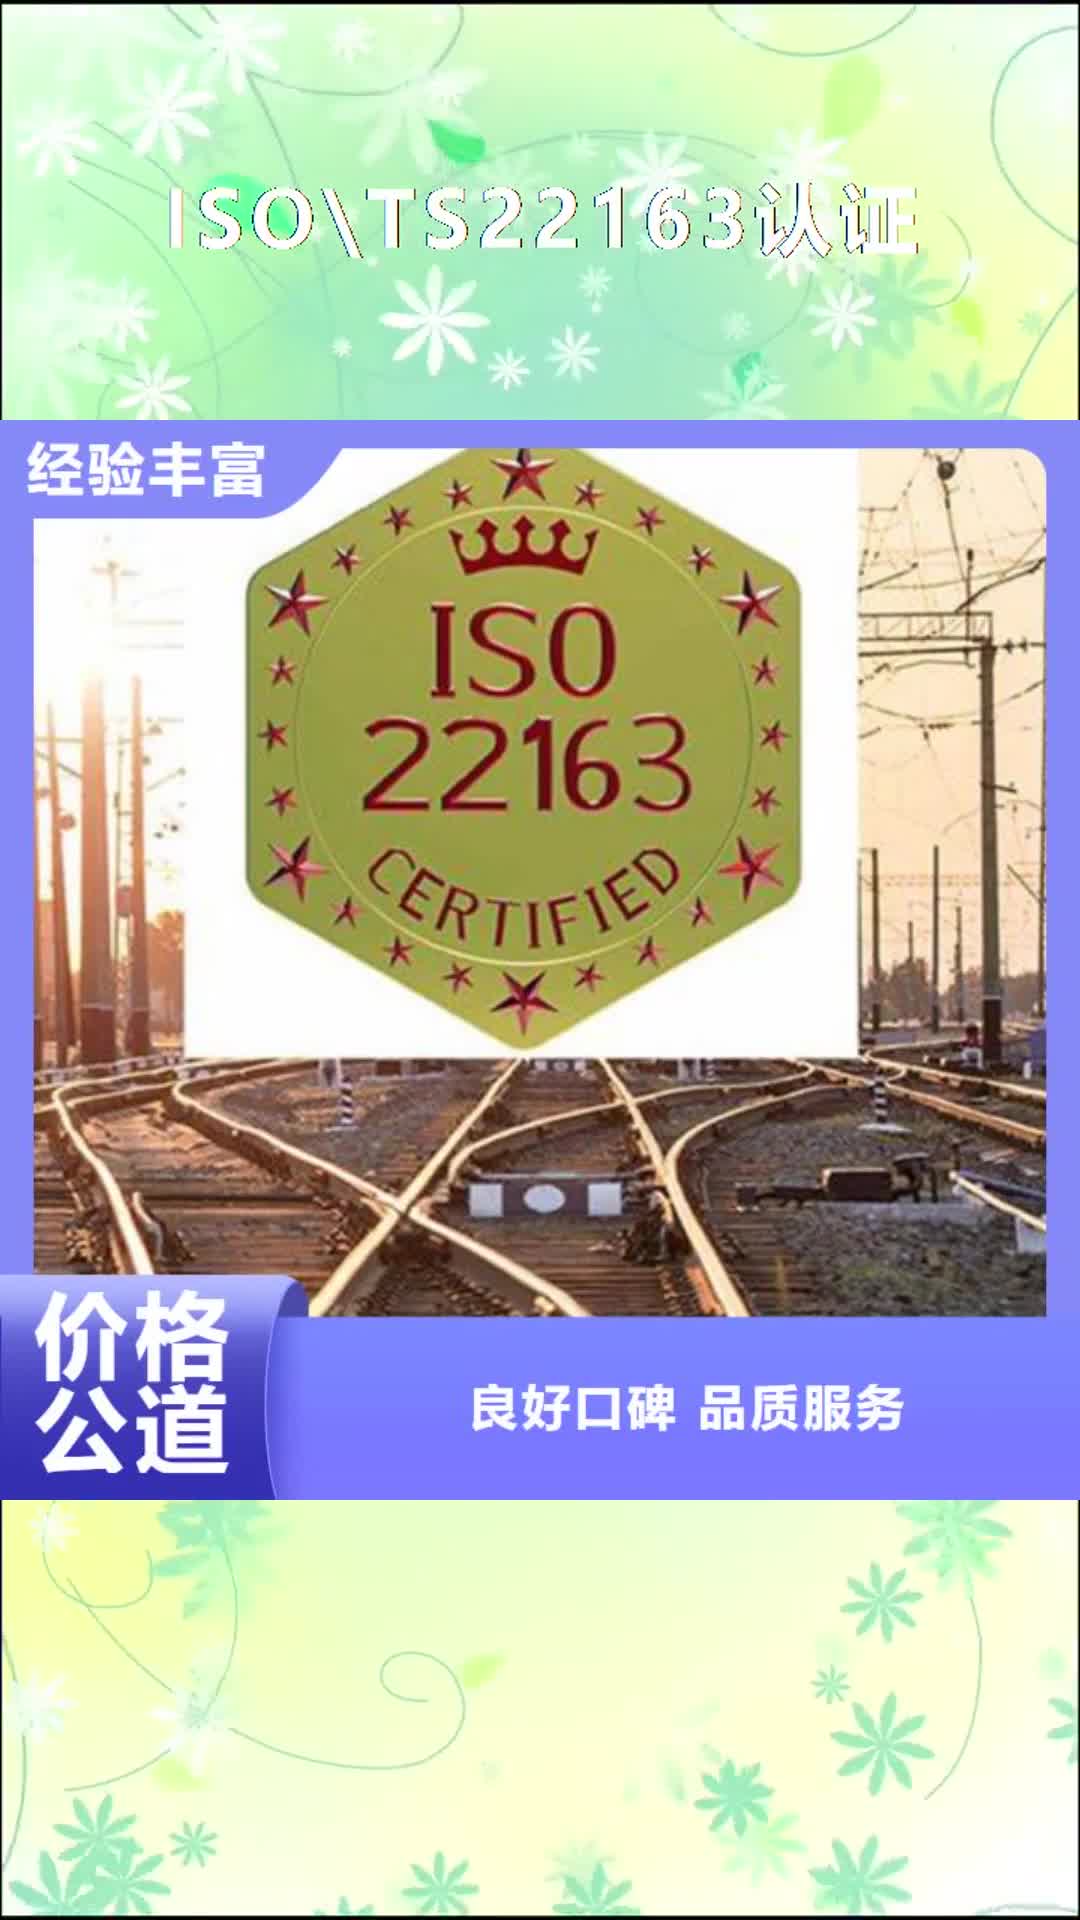 【萍乡 ISO\TS22163认证-HACCP认证值得信赖】